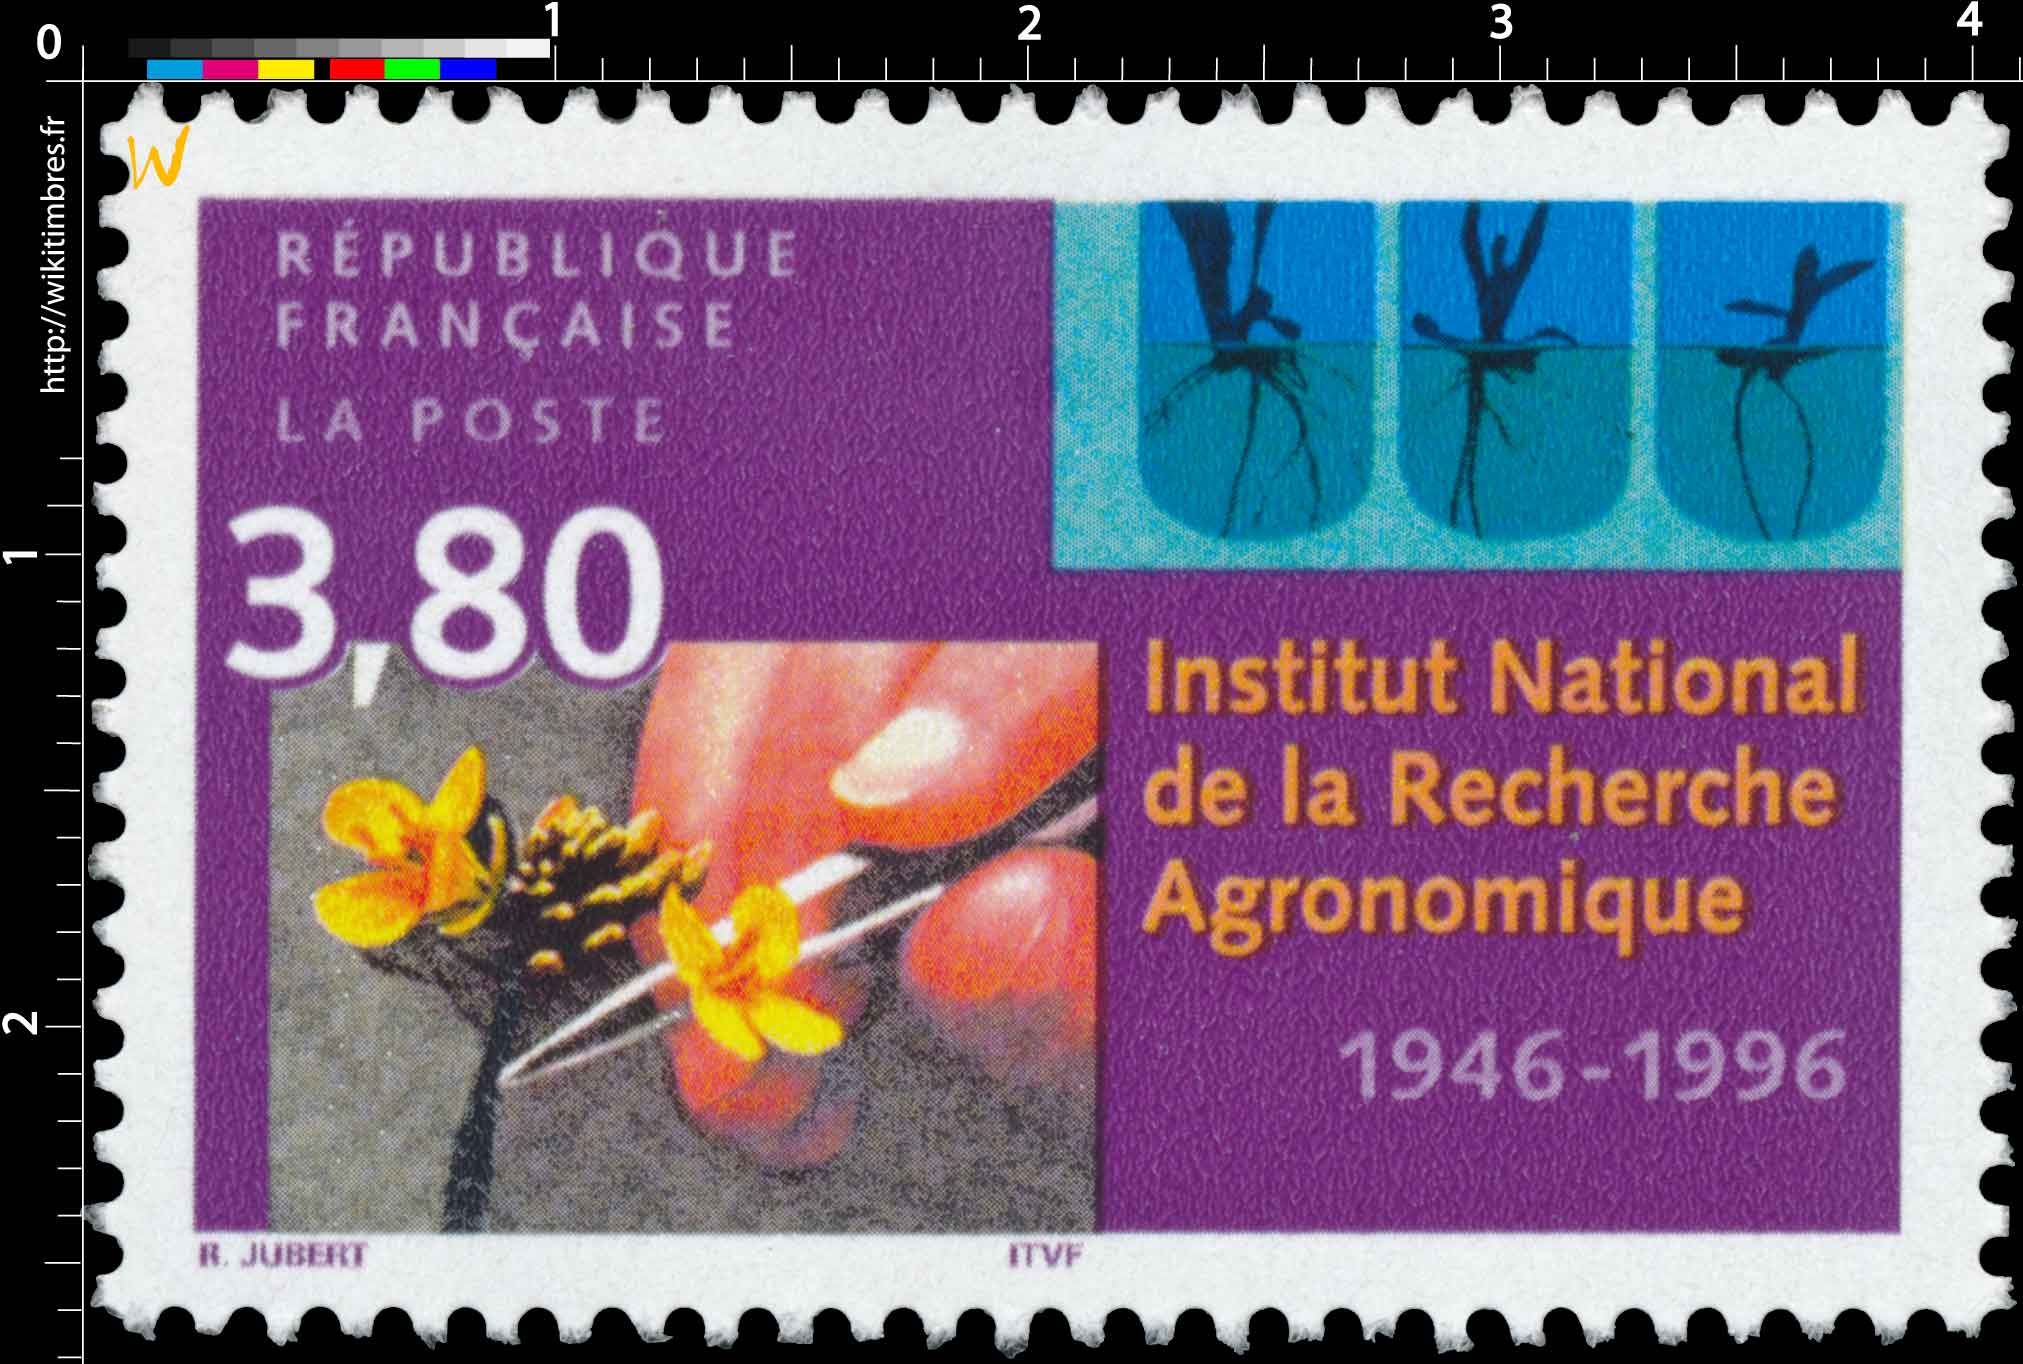 Institut National de la Recherche Agronomique 1946-1996